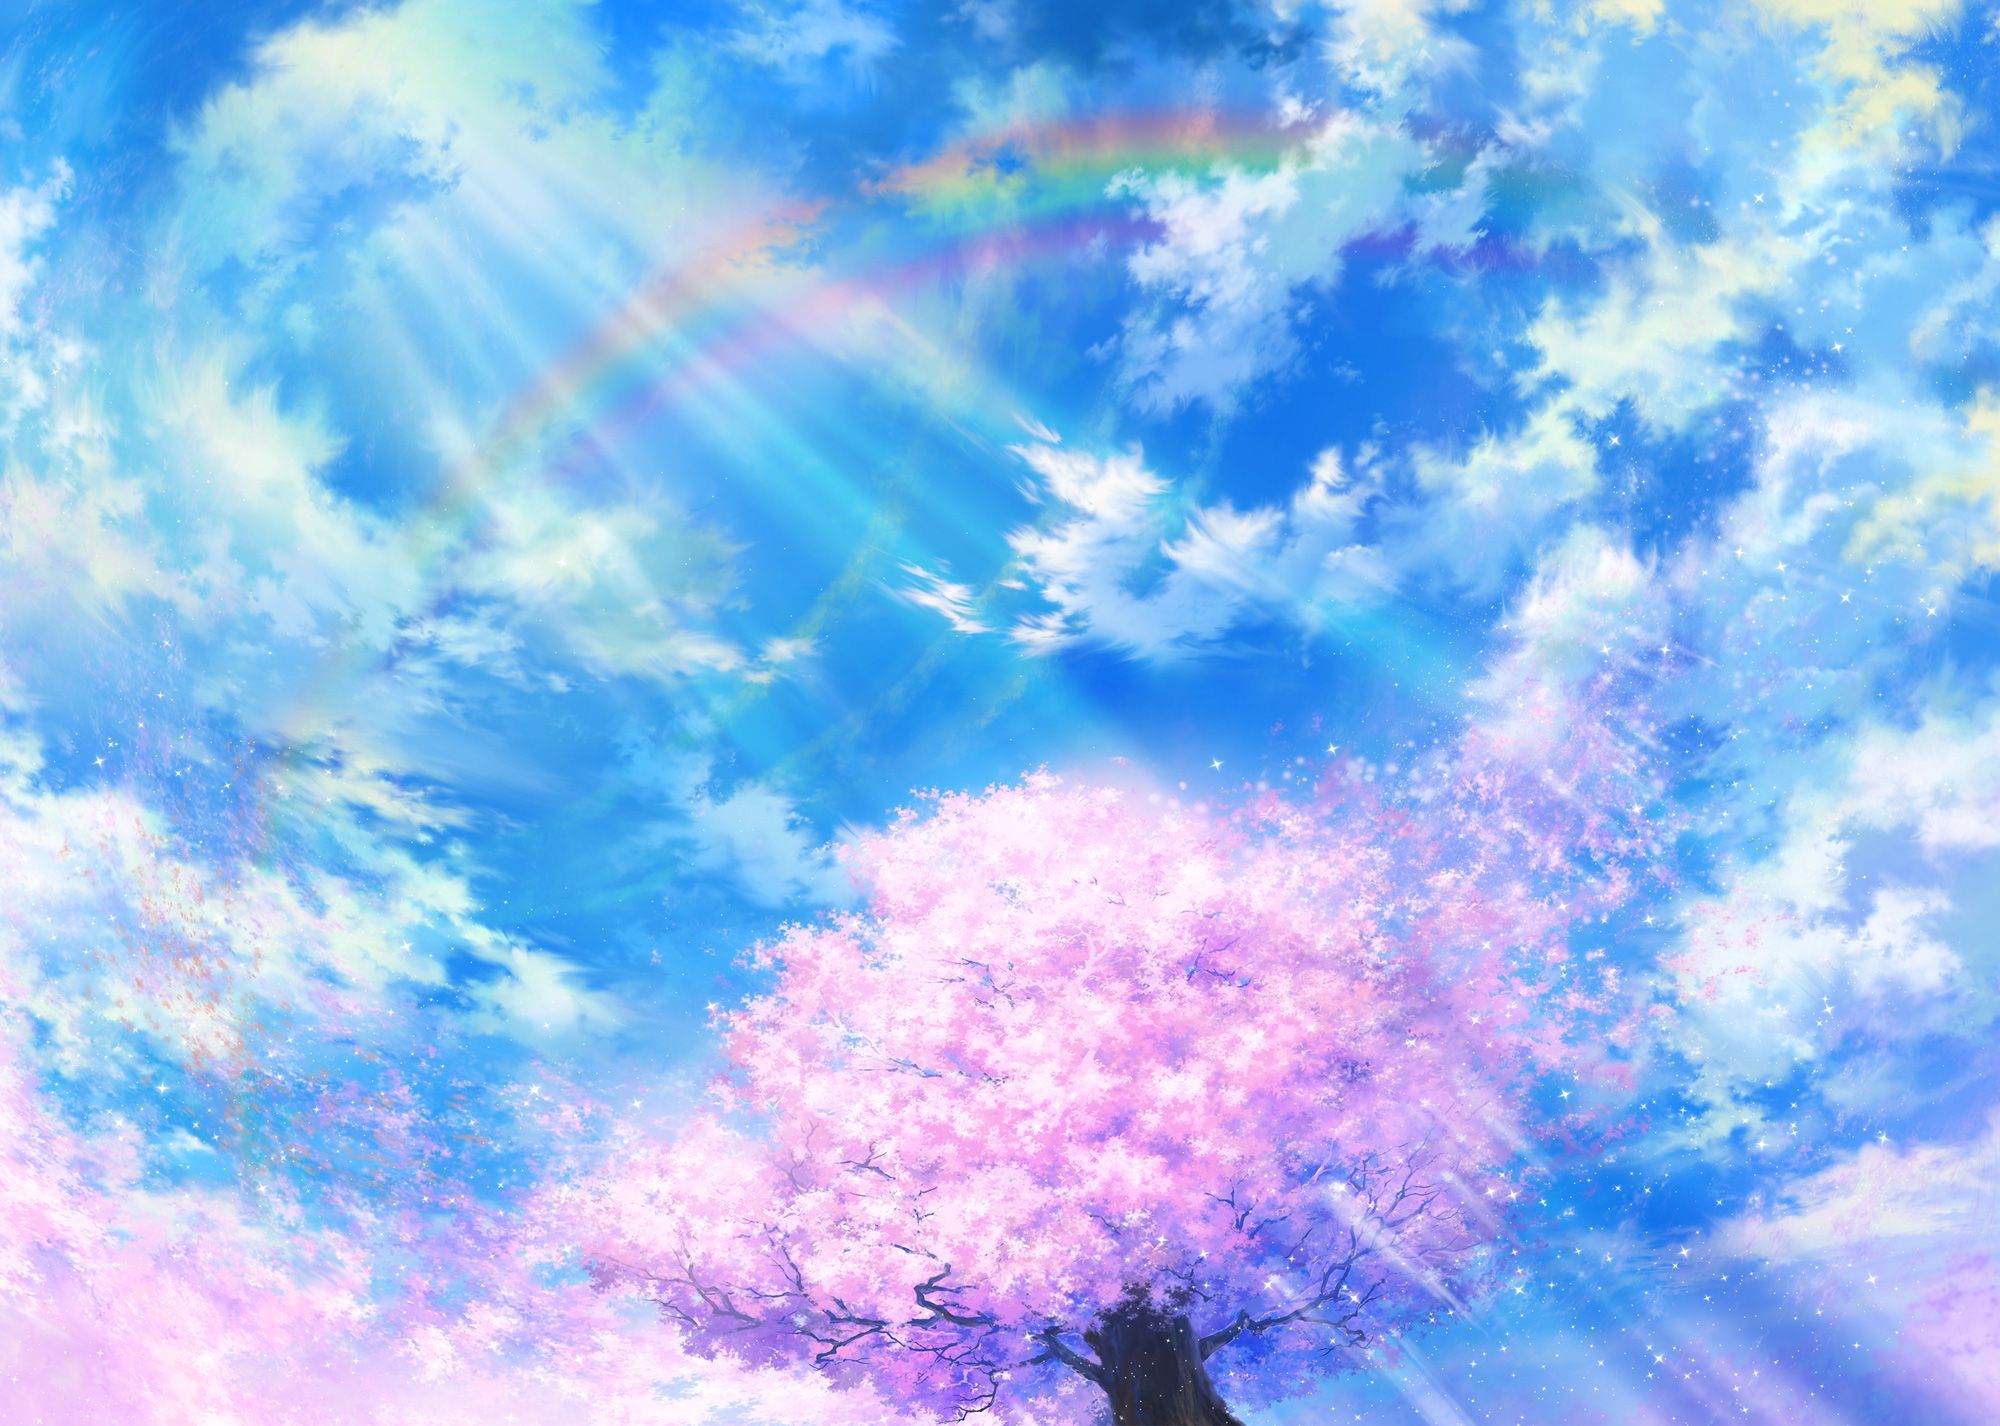 Hãy tưởng tượng một thiên đường đầy màu sắc, với cả cầu vồng chói chang và những nhân vật anime đáng yêu trong anime yêu thích của bạn. Hình ảnh với chủ đề \